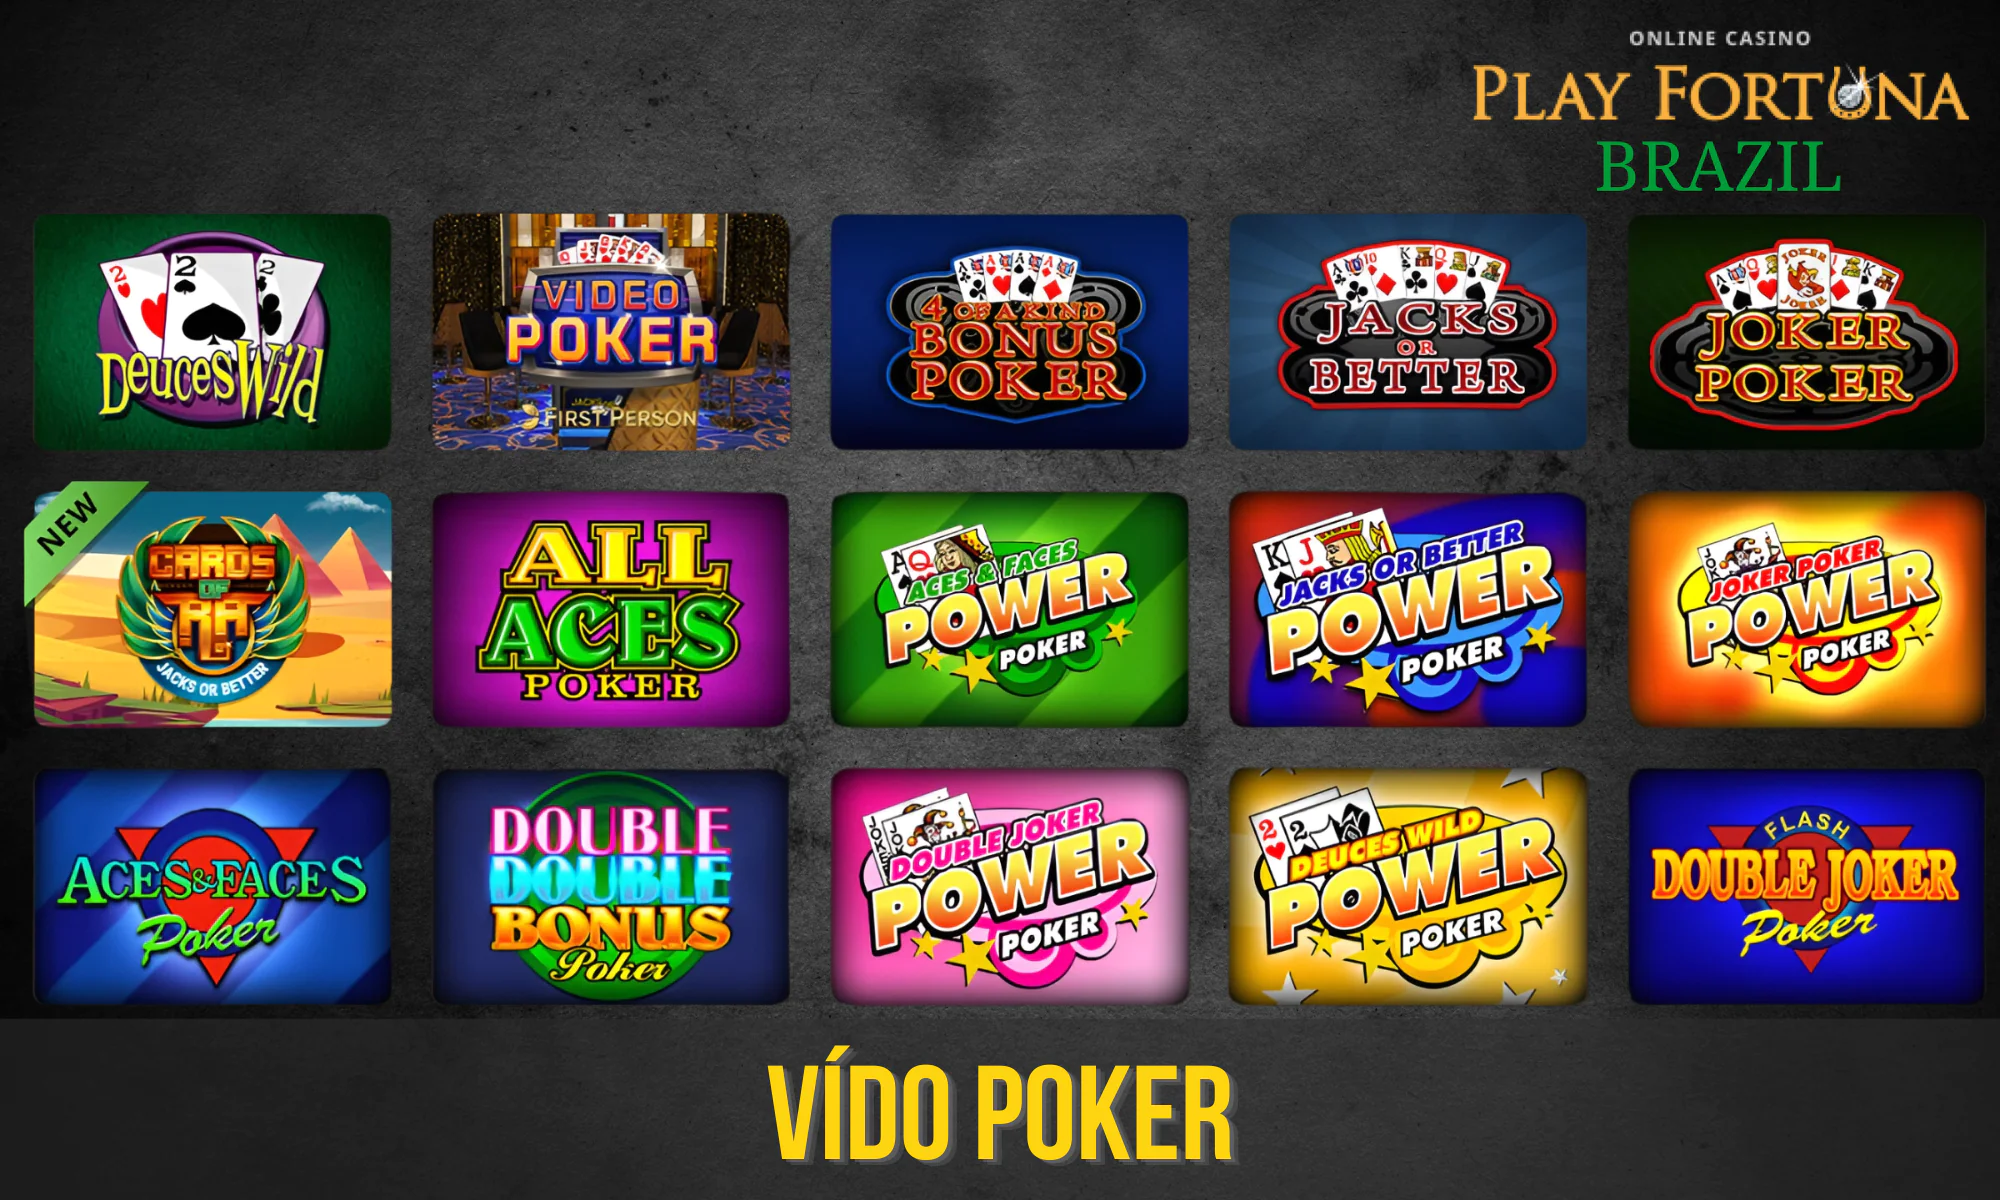 O Play Fortuna tem 10 variantes de Vídeo Pôquer para escolher